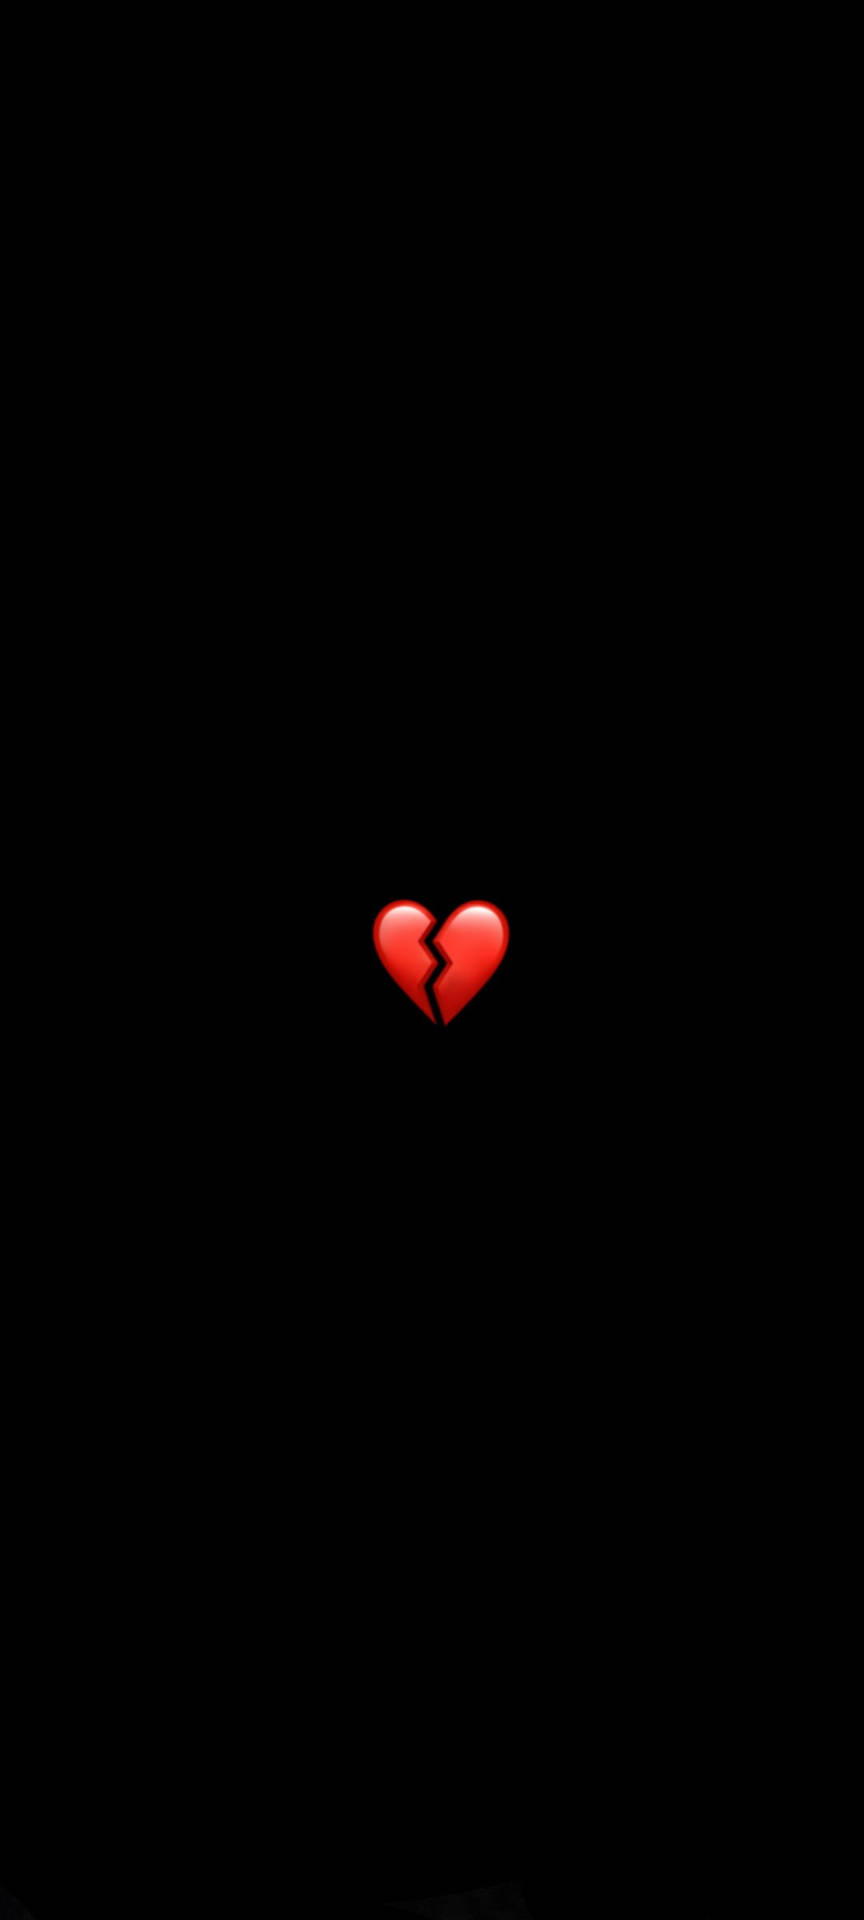 Emoji Of A Broken Heart Black